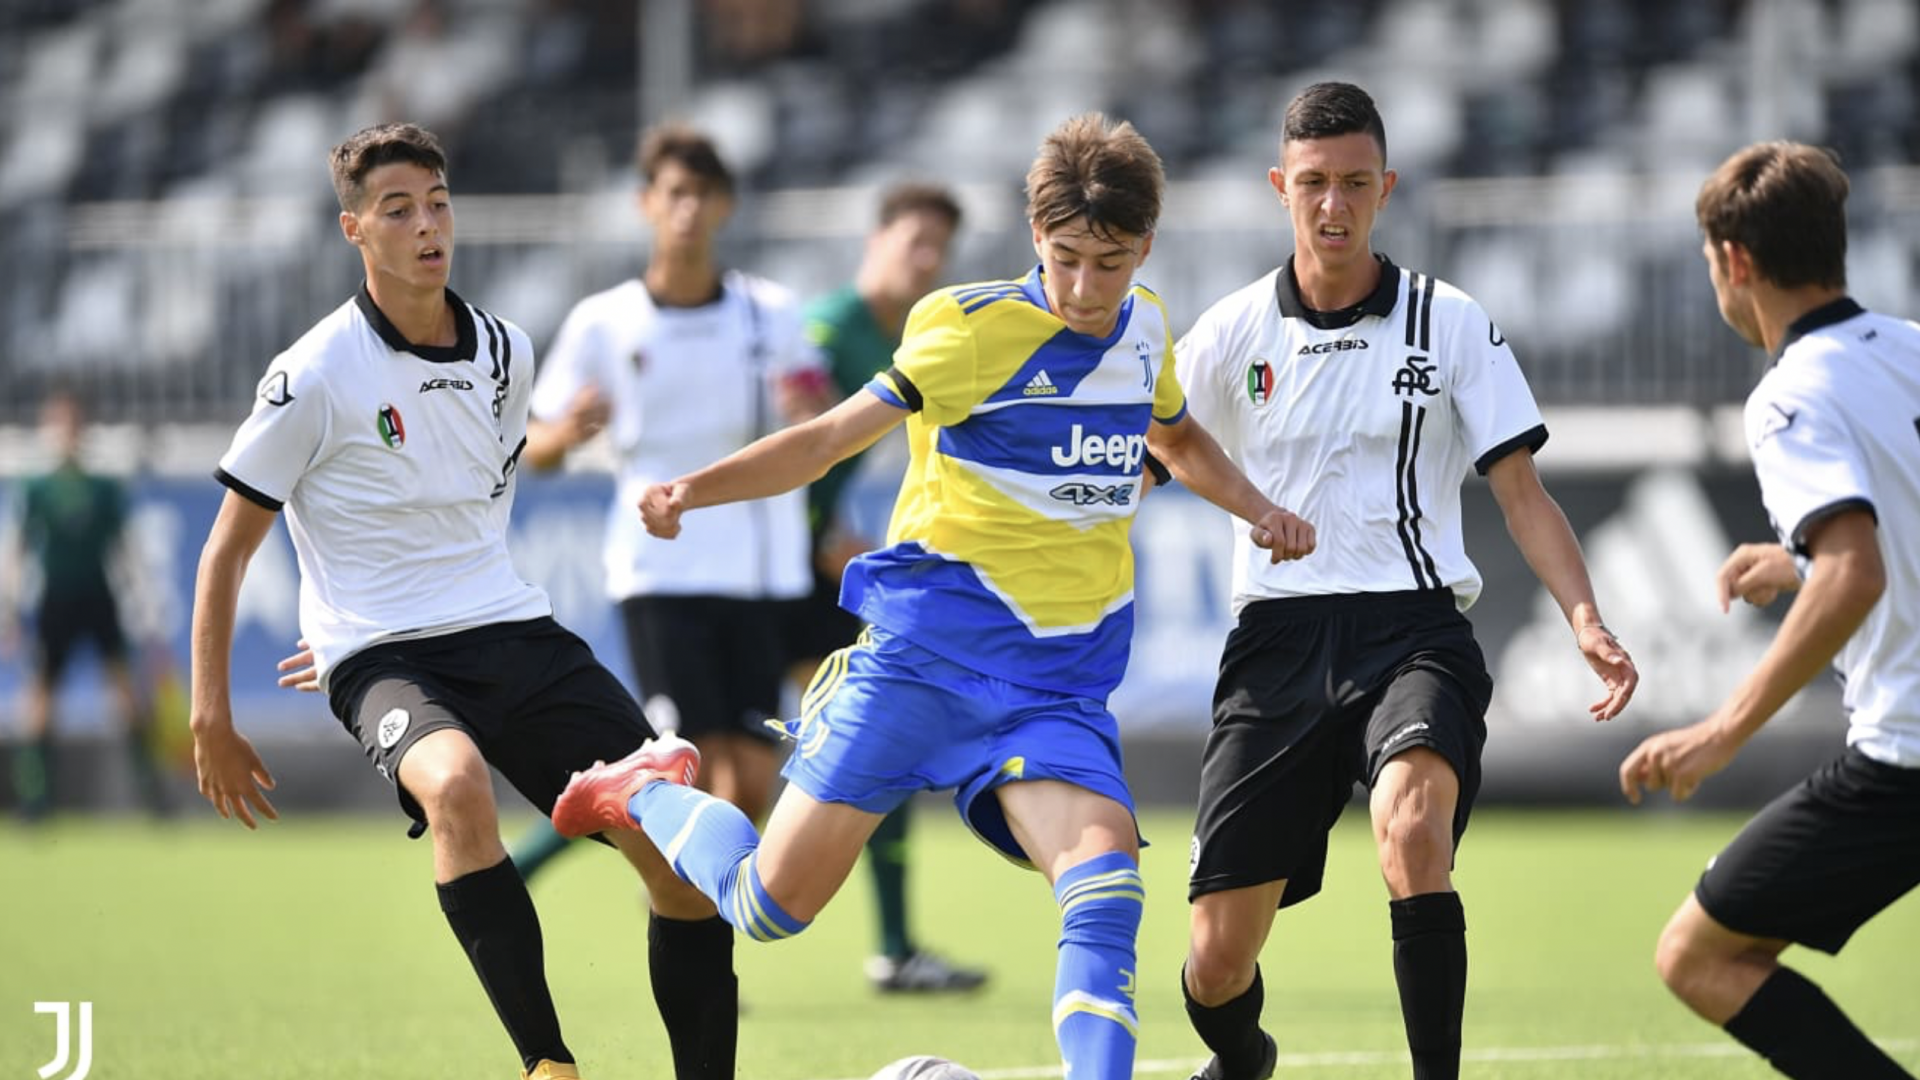 Under 17: Juventus - Spezia 4-1